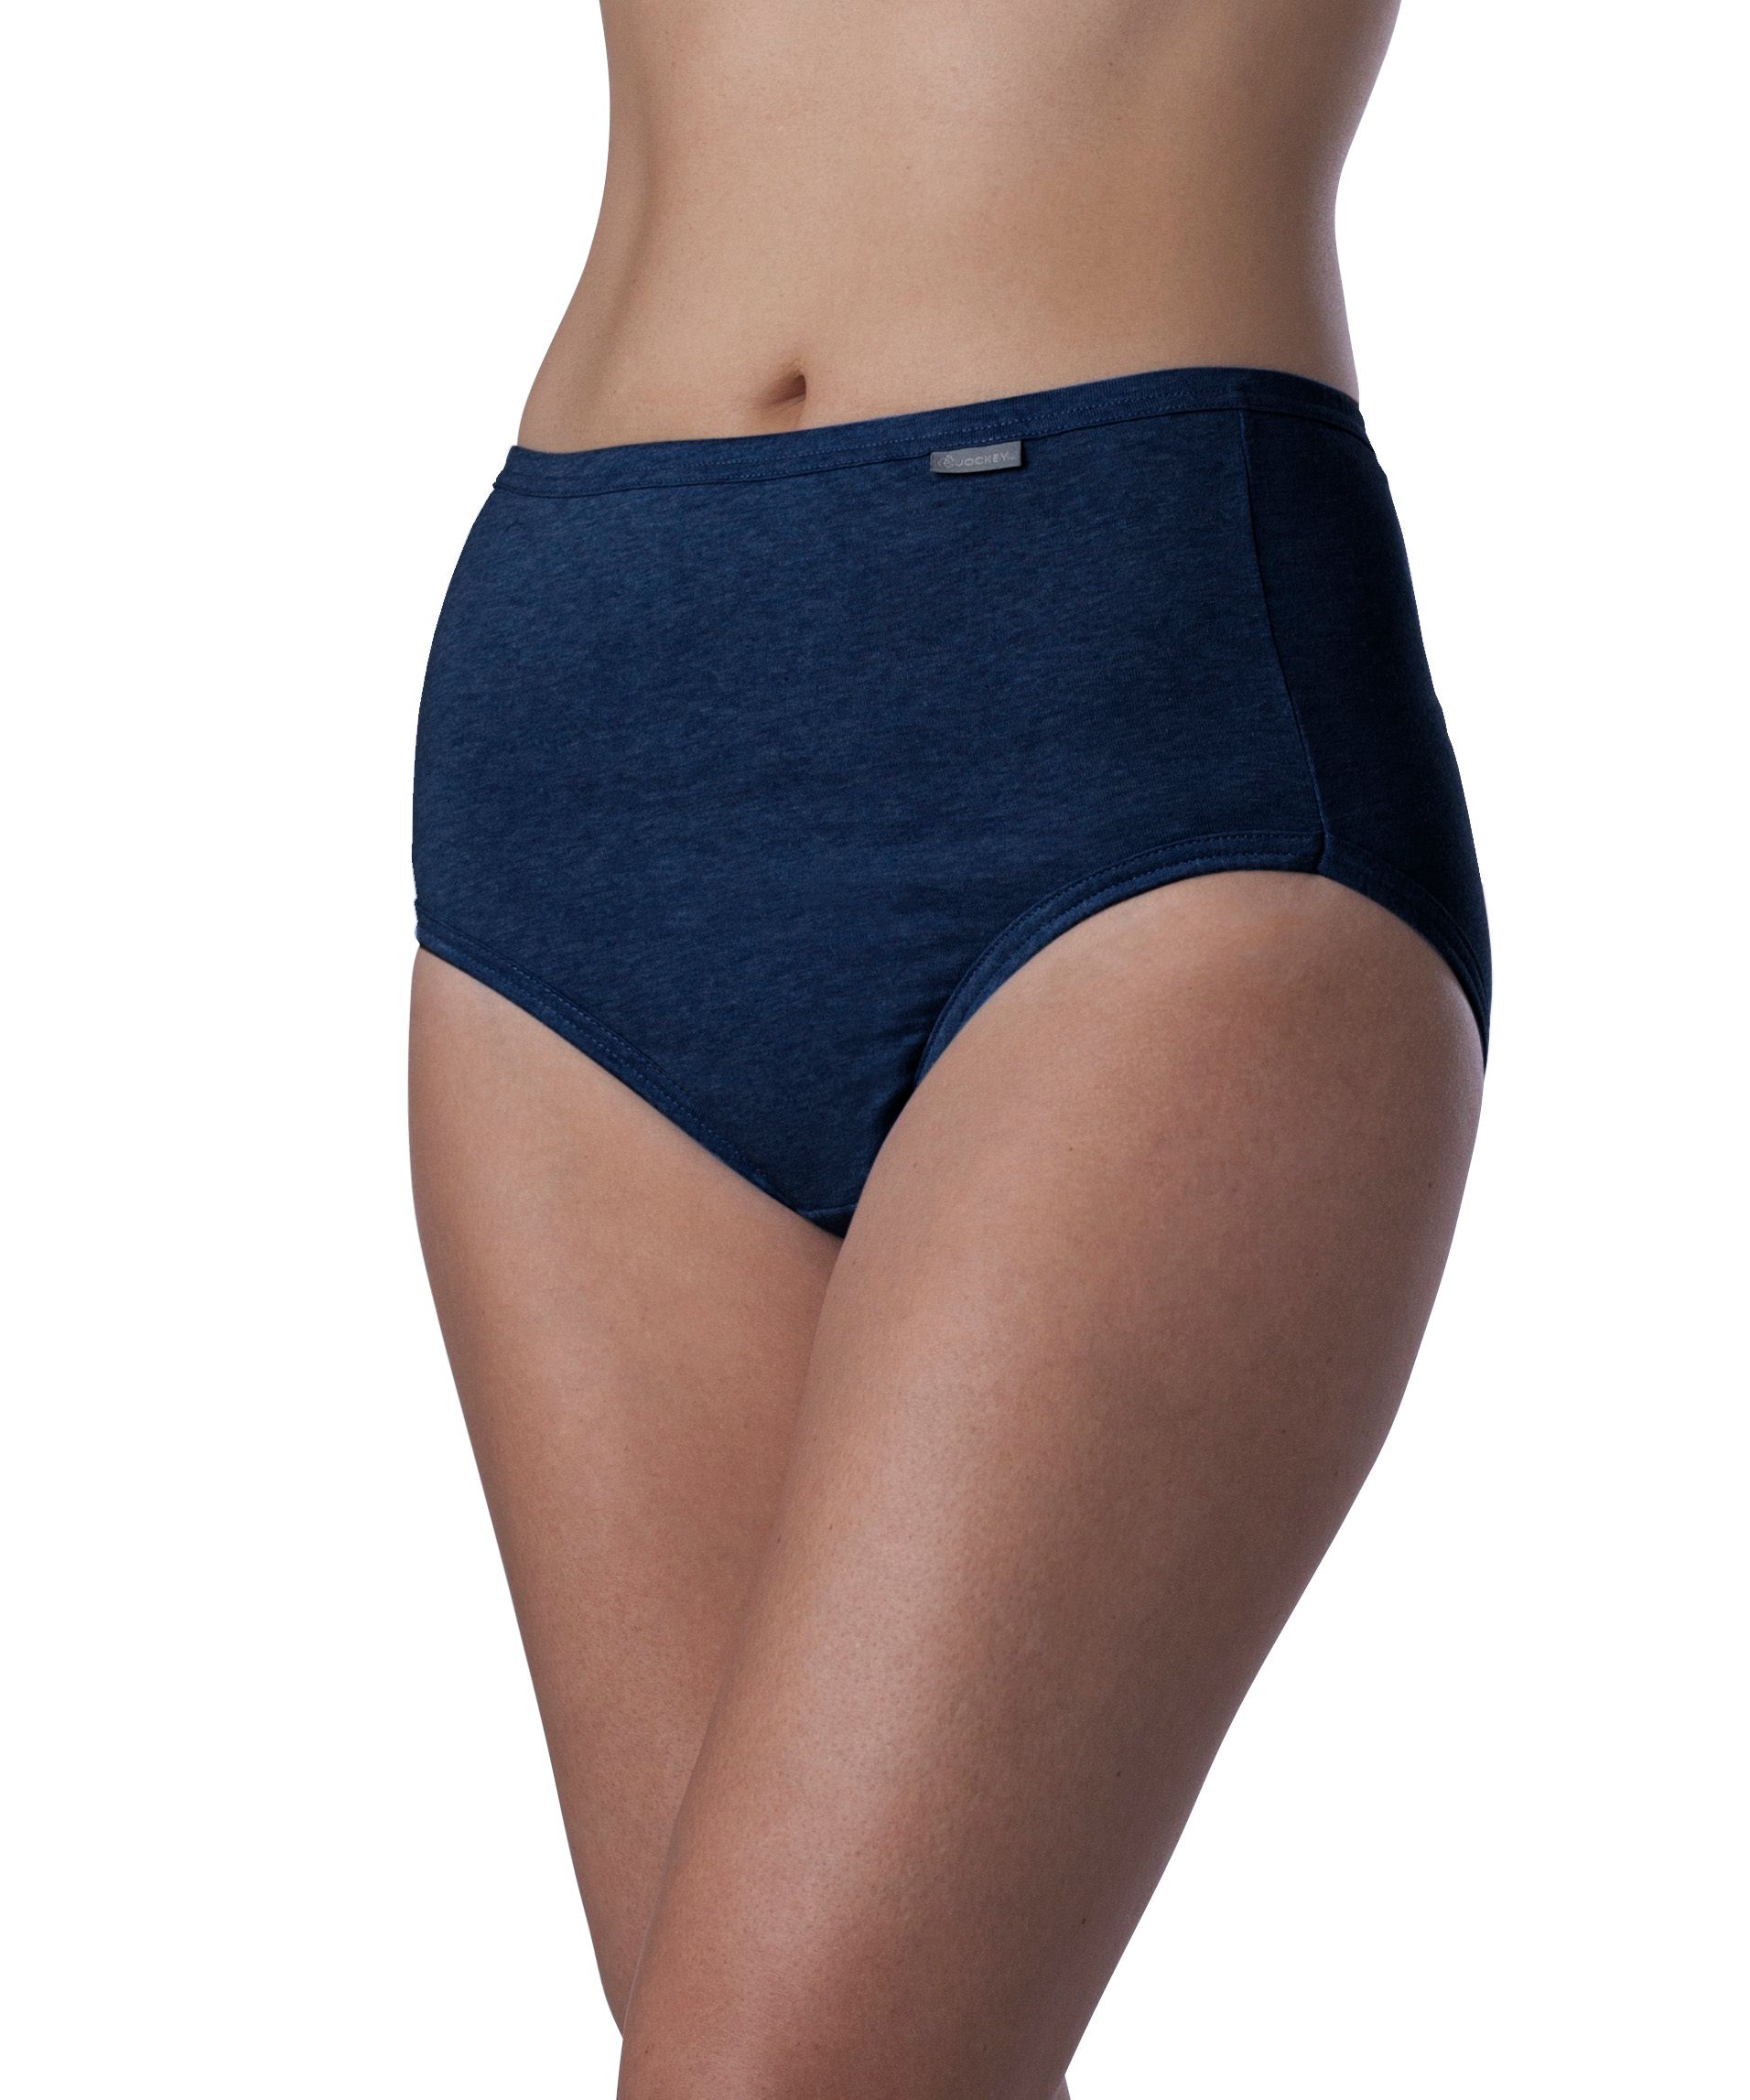 Women's Jockey Underwear, Blue 100% Cotton Briefs, Size 8, 3 Pack